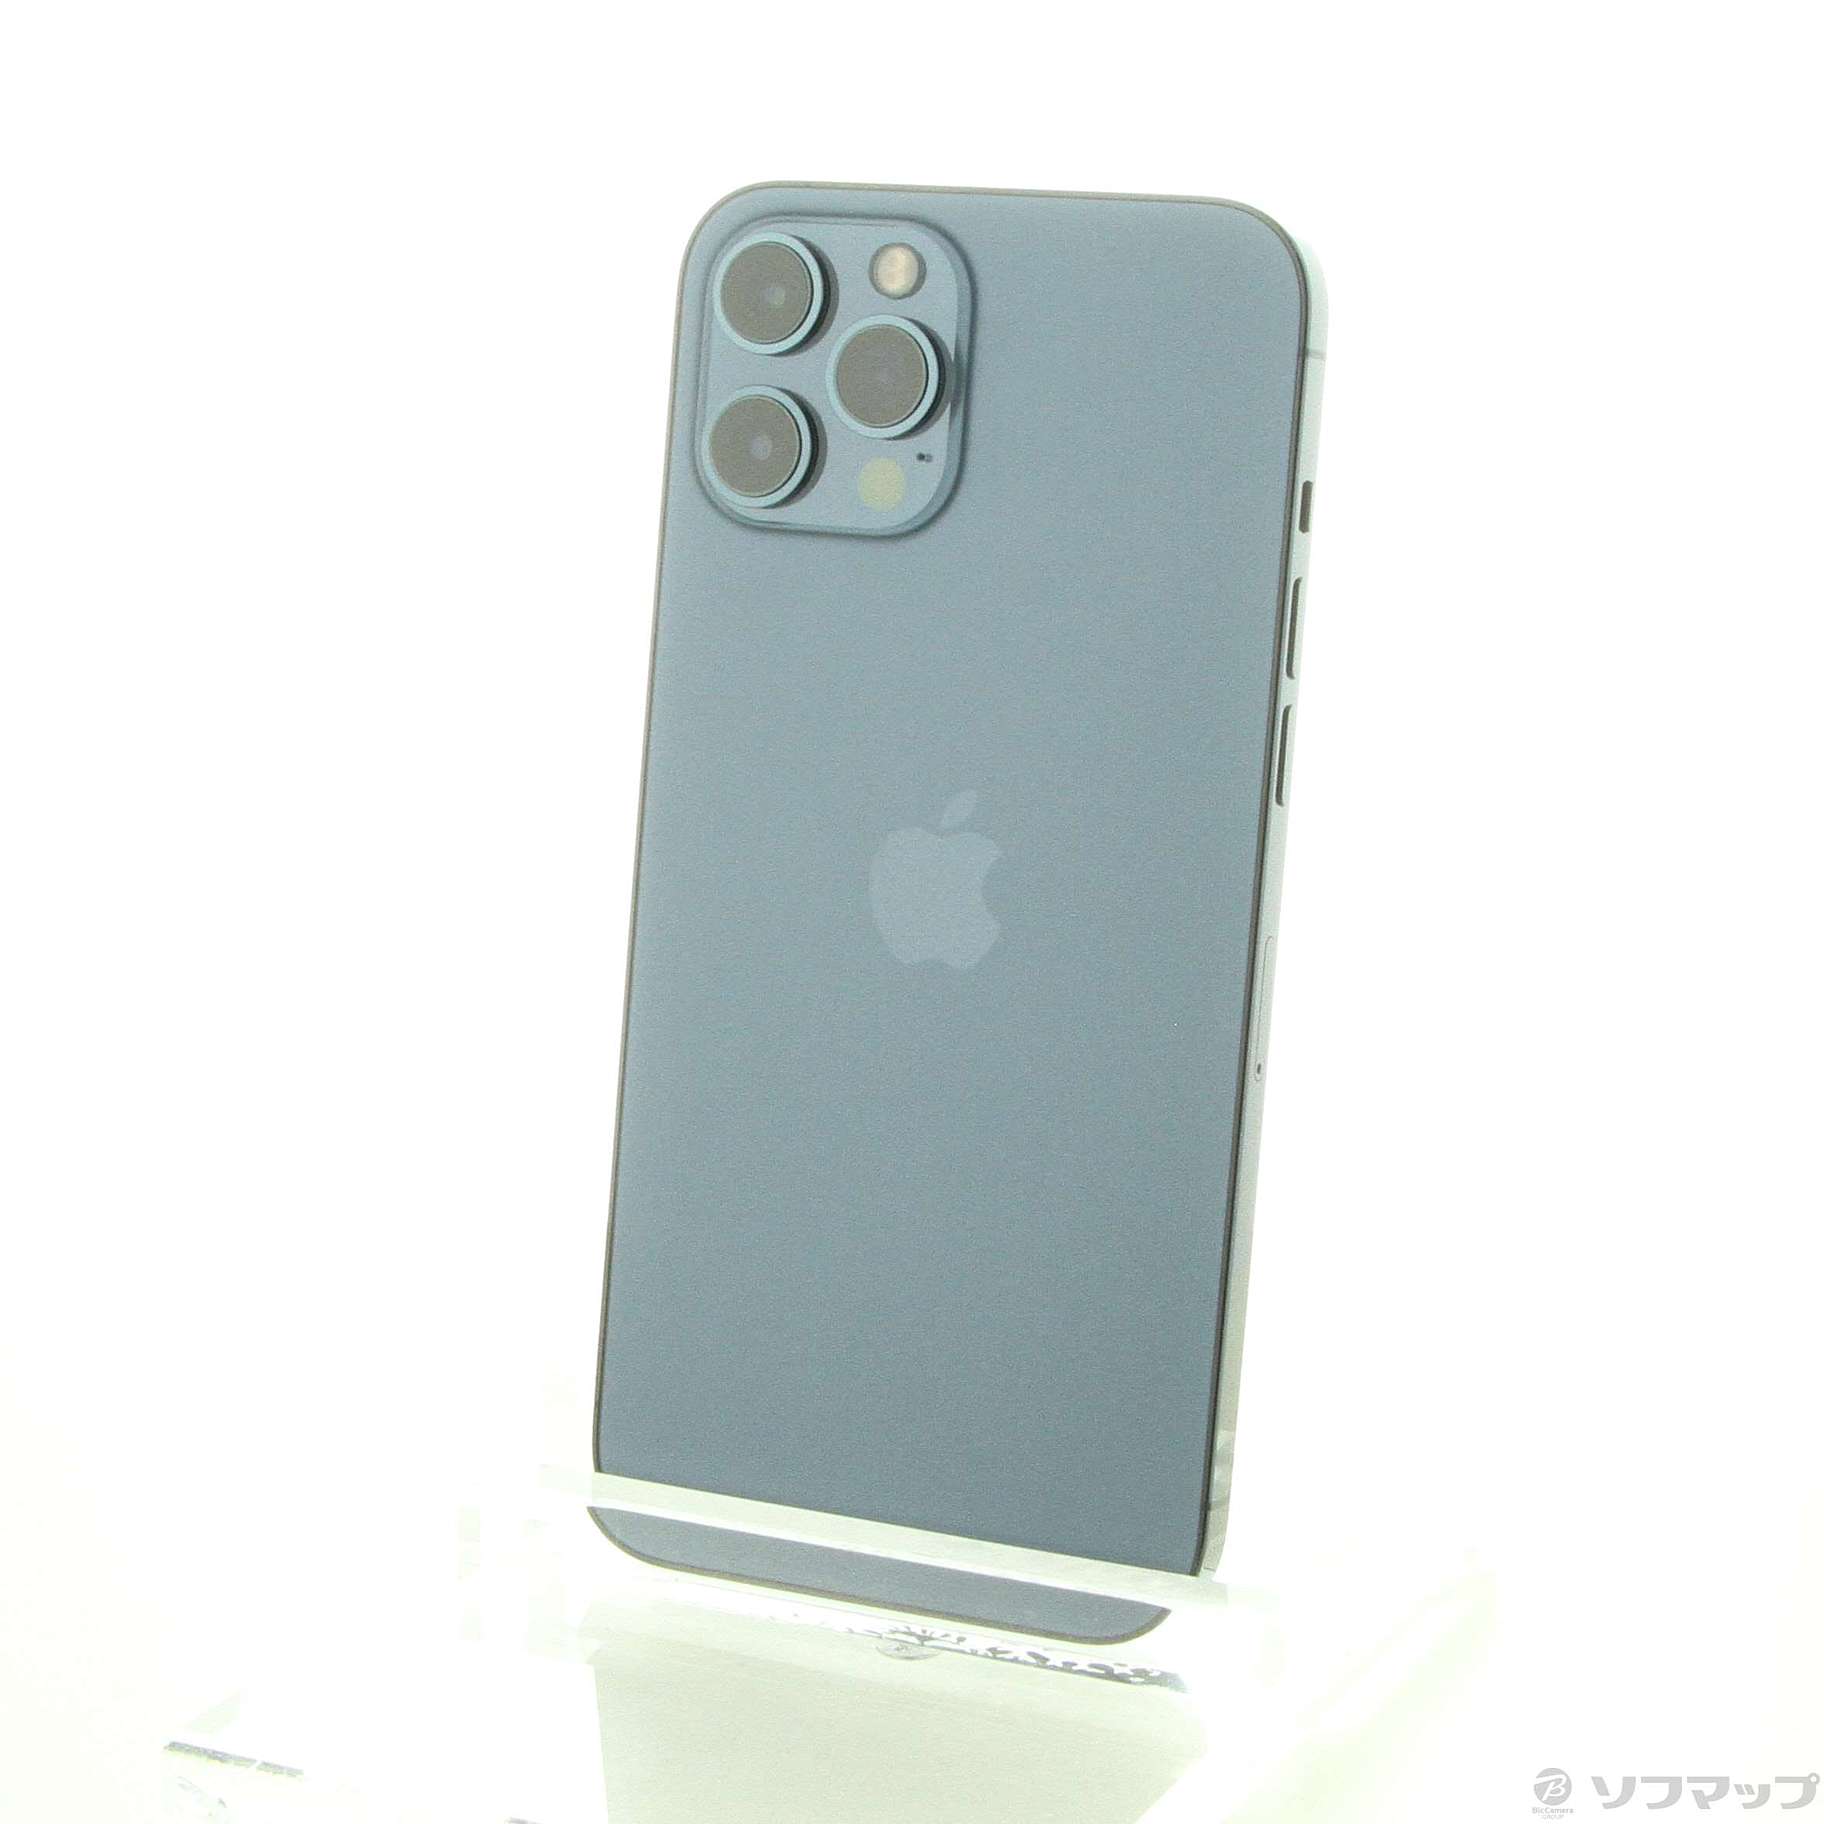 中古】セール対象品 iPhone12 Pro Max 128GB パシフィックブルー ...